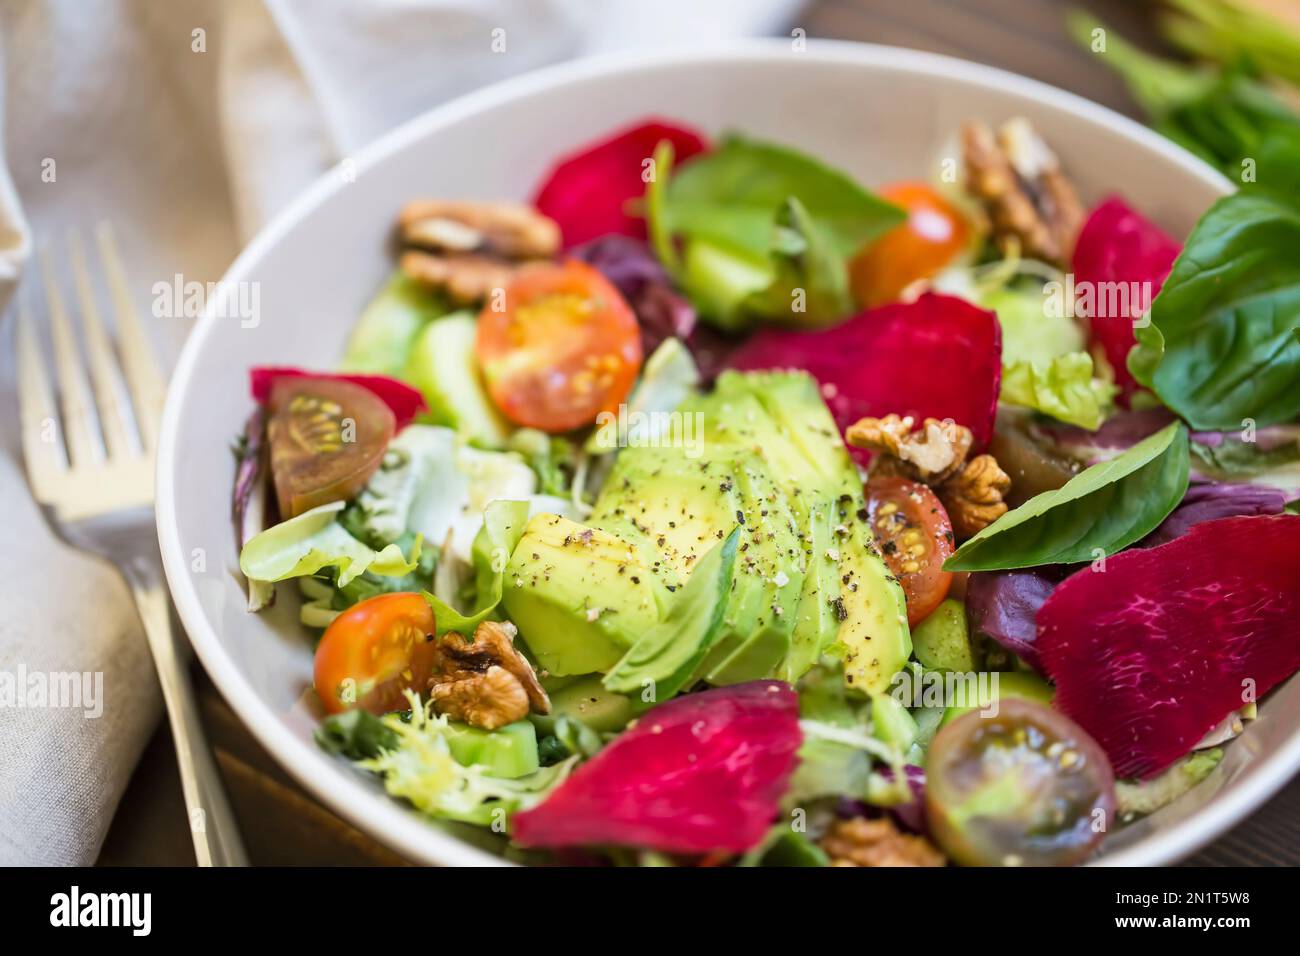 Salade d'été fraîche avec avocat, laitue, betterave, noix et graines. Salade végétalienne saine d'été sur une table en bois, manger propre Banque D'Images